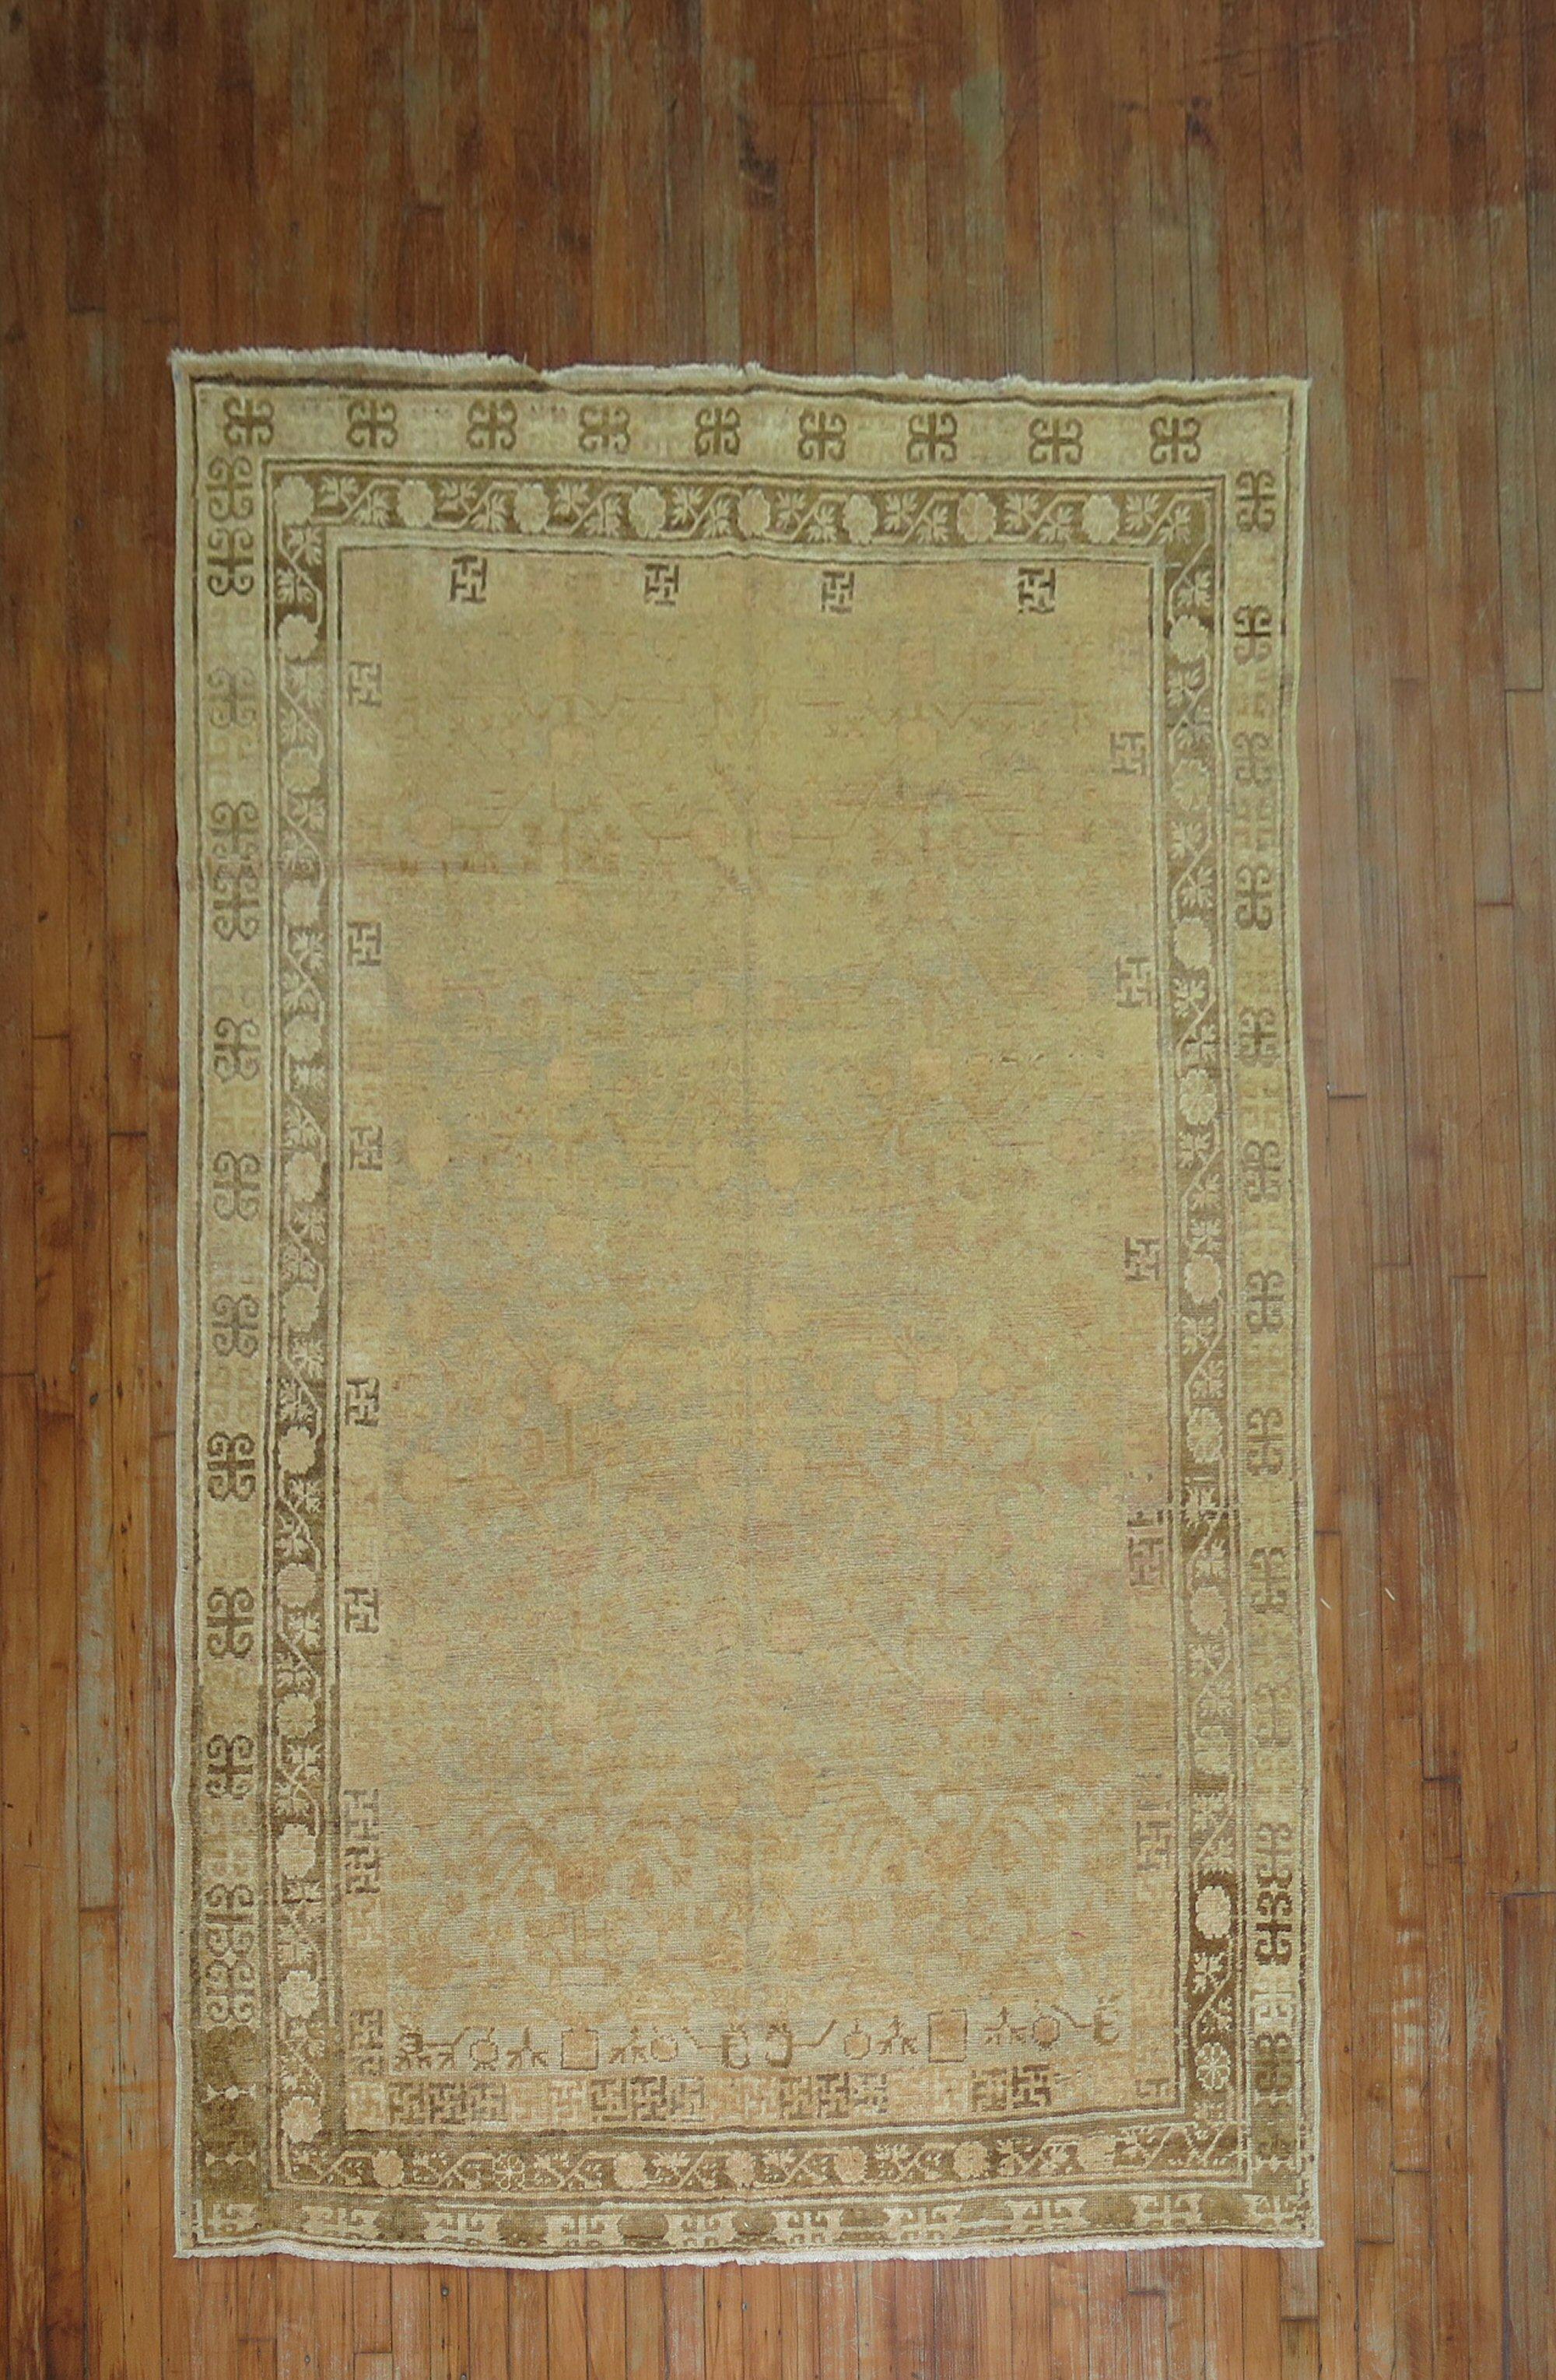 Ein Khotan-Teppich, der vor über 100 Jahren in Ostturkestan gewebt wurde, mit attraktiven, subtilen Farben und einem durchgehenden Granatapfelmuster. Enthält mehrere leichte natürliche Abrasionen. Es ist sehr einfach, moderne oder antike Möbel mit